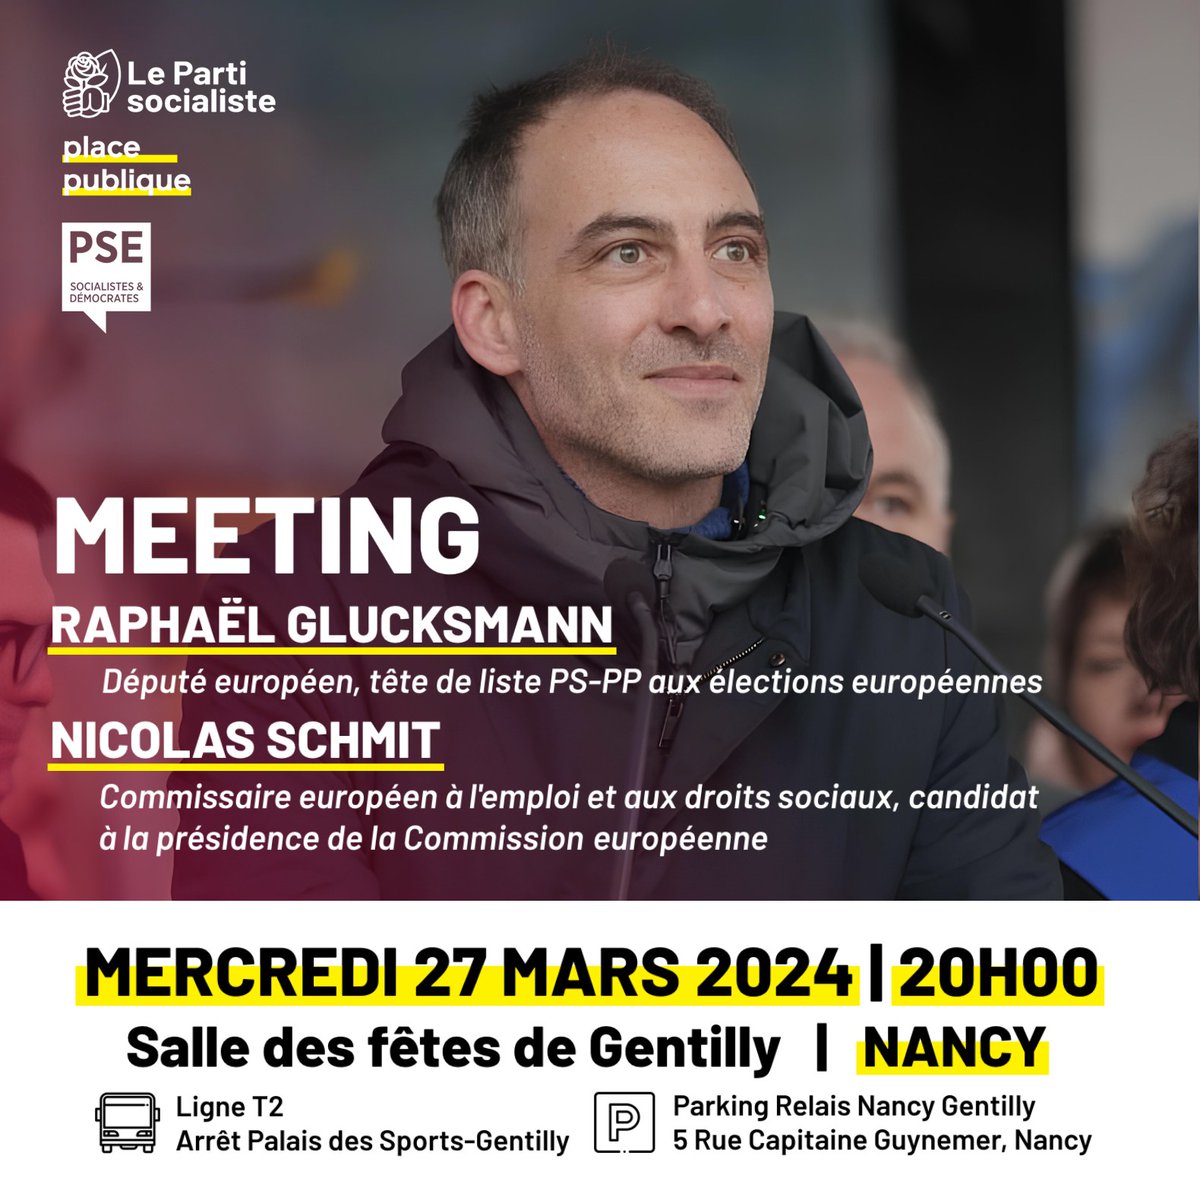 Nous aurons le plaisir d'accueillir le 27 mars à Nancy @rglucks1 et @NicolasSchmitEU. Deux voix qui portent en Europe face aux nationalistes et aux populistes qui avancent partout, face aux inégalités criantes, face au défi de la transition écologique. Soyons nombreux.